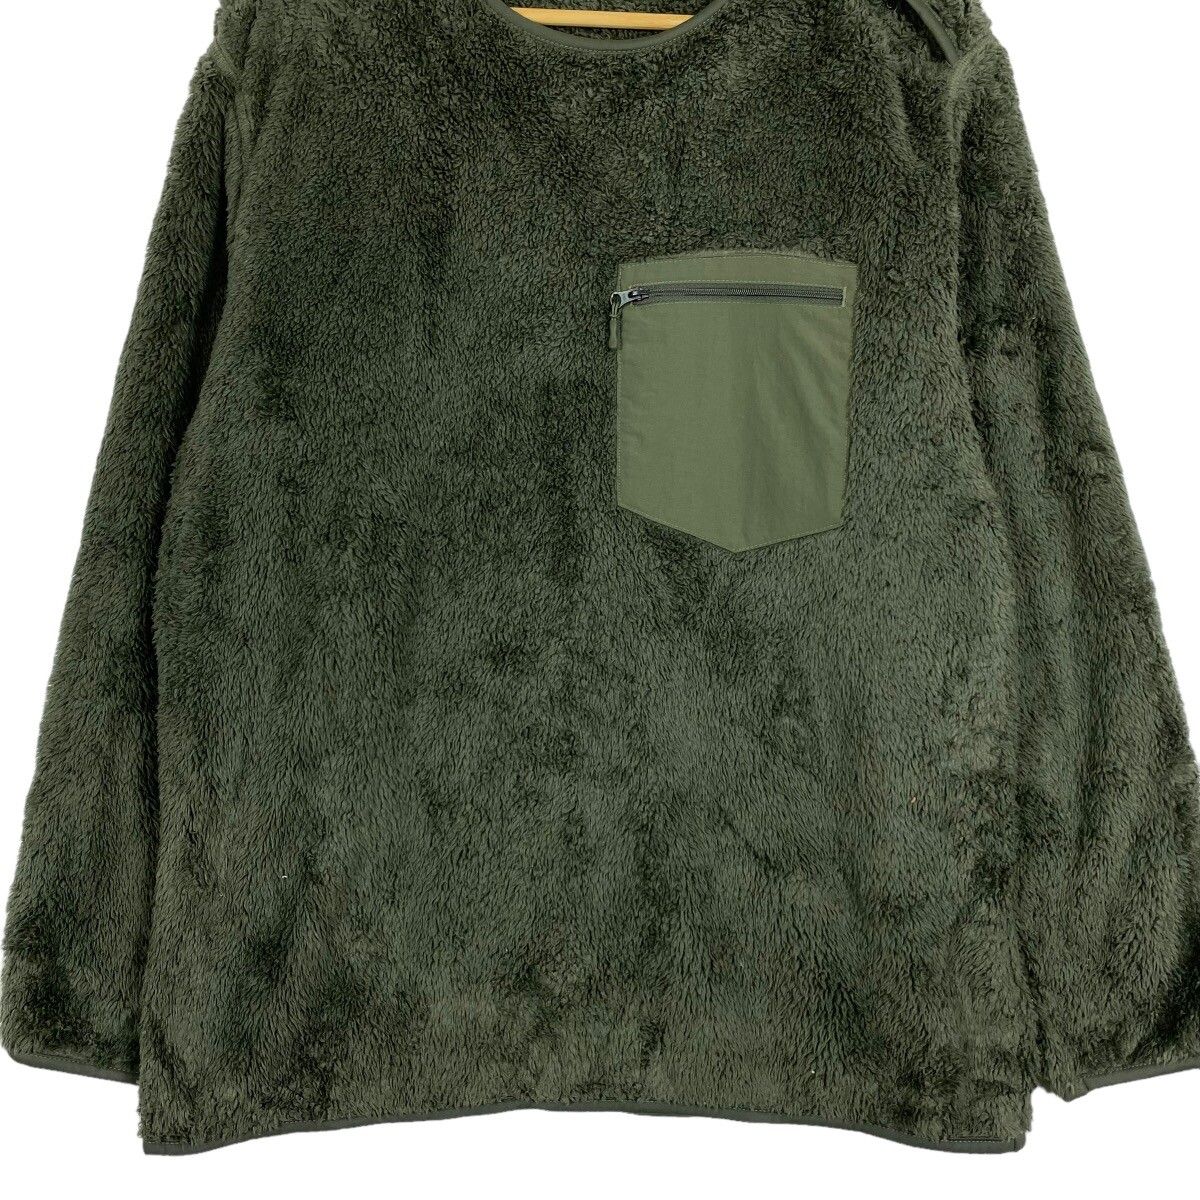 Uniqlo x Engineered Garments Fleece Sweater - 4